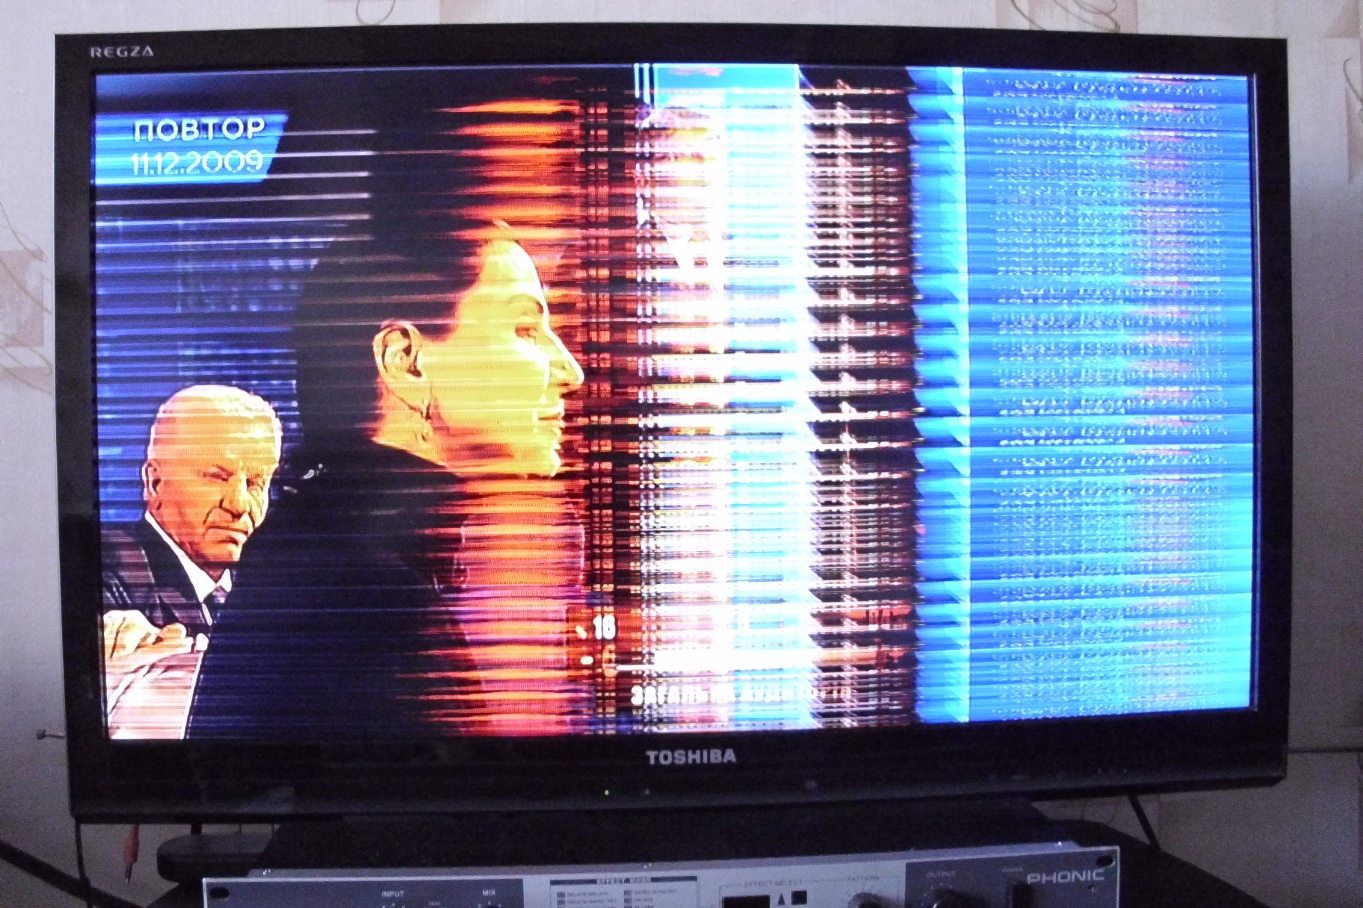 На экране телевизора появились полосы: горизонтальные, вертикальные, черные